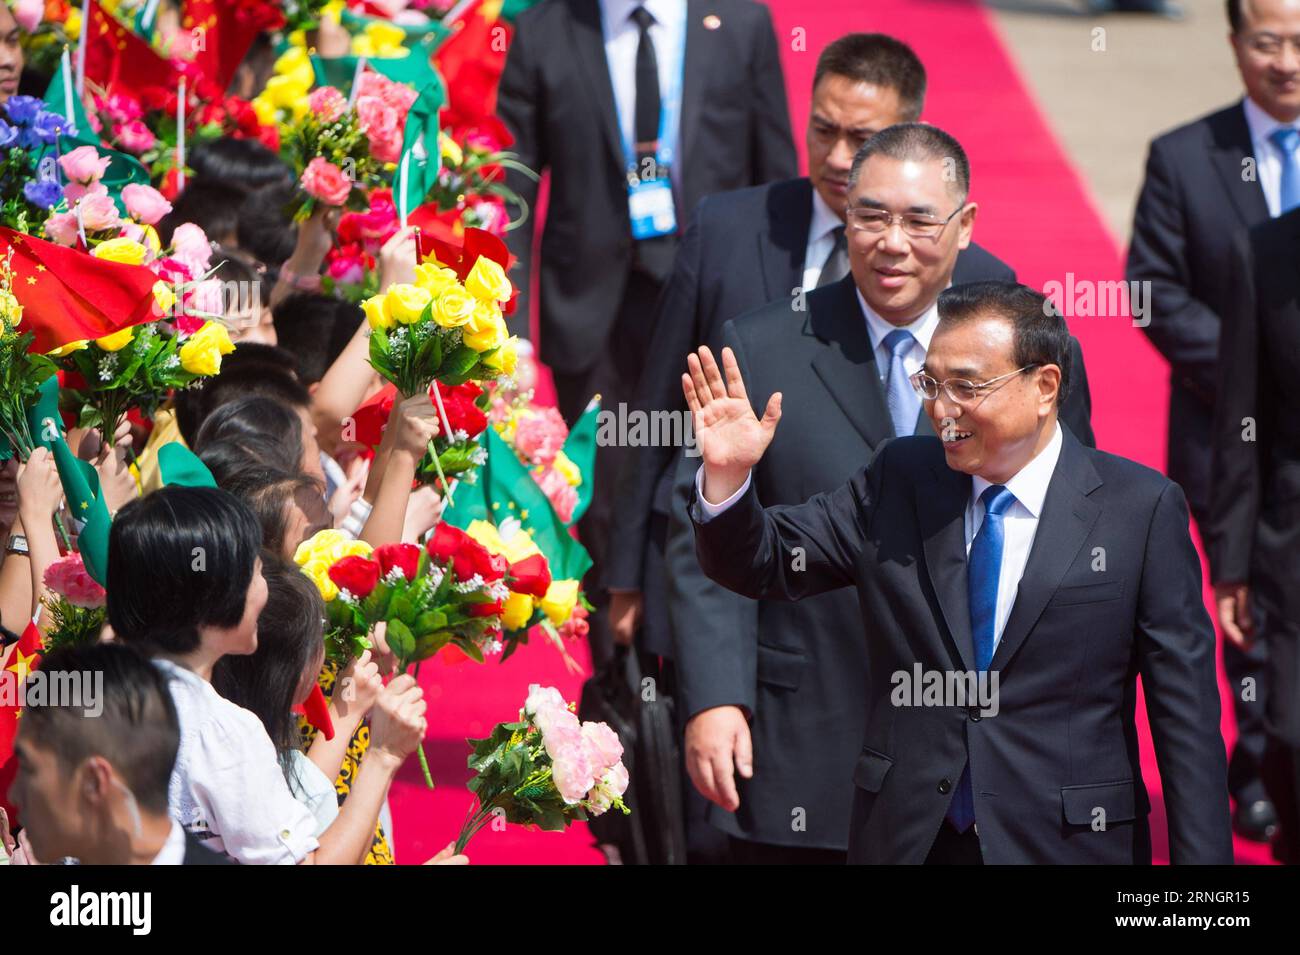 (161010) -- MACAO, 10 octobre 2016 -- le premier ministre chinois Li Keqiang arrive dans la région administrative spéciale de Macao pour une visite d'inspection de trois jours et pour assister à l'ouverture de la cinquième Conférence ministérielle du Forum pour la coopération économique et commerciale entre la Chine et les pays lusophones à Macao, dans le sud de la Chine, le 10 octobre 2016. ) (Yxb) CHINA-MACAO-LI KEQIANG-INSPECTION TOUR(CN) CheongxKamxKa PUBLICATIONxNOTxINxCHN Macao OCT 10 2016 le Premier ministre chinois quitte Keqiang arrive dans la région administrative spéciale de Macao pour une visite d'inspection de trois jours et pour assister à l'ouverture de la Cinquième Banque D'Images